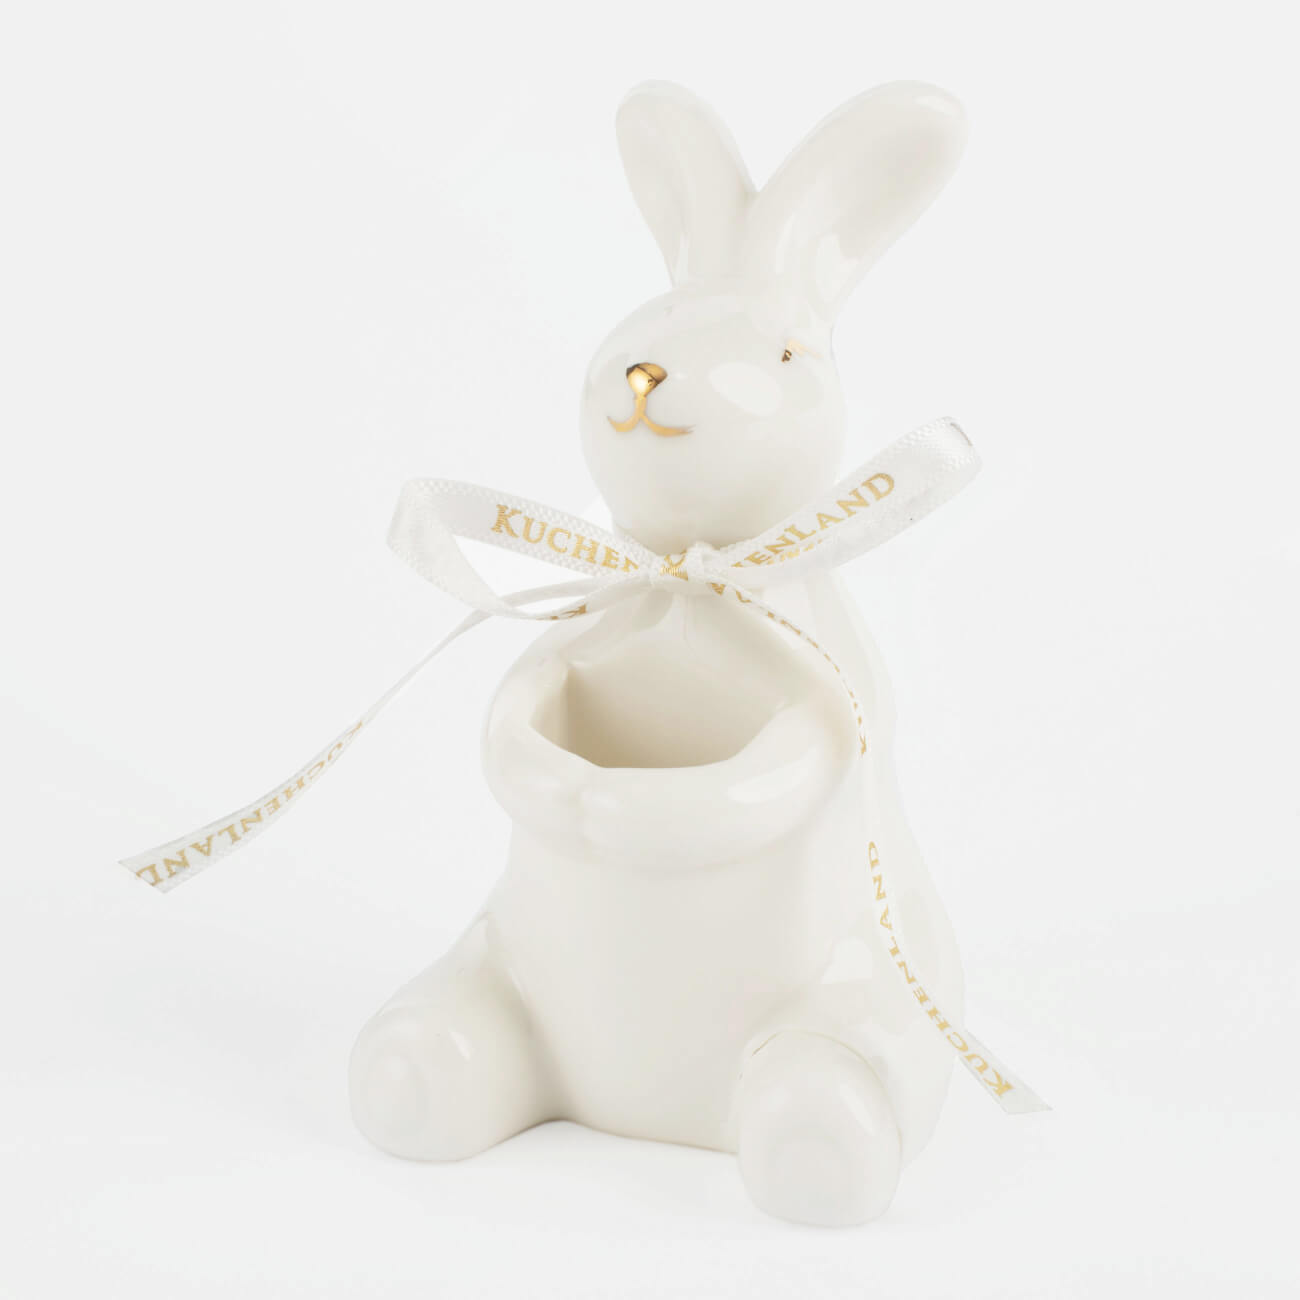 Подставка для зубочисток, 10 см, фарфор P, бело-золотистая, Кролик, Easter gold изображение № 1